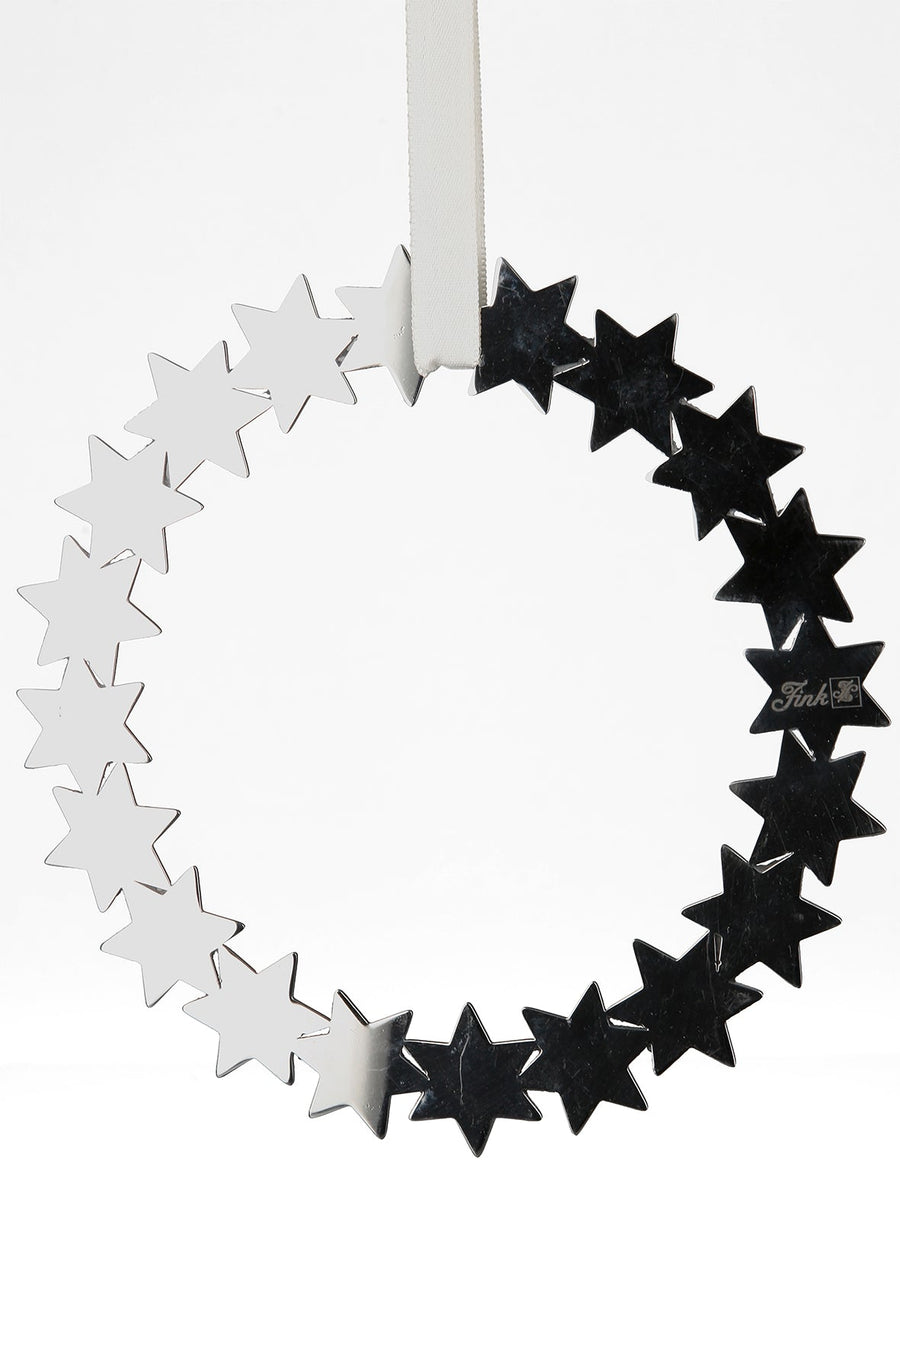 FINK 'Dekoration Kranz, Sterne aus Edelstahl, D11cm'-FINK-151124